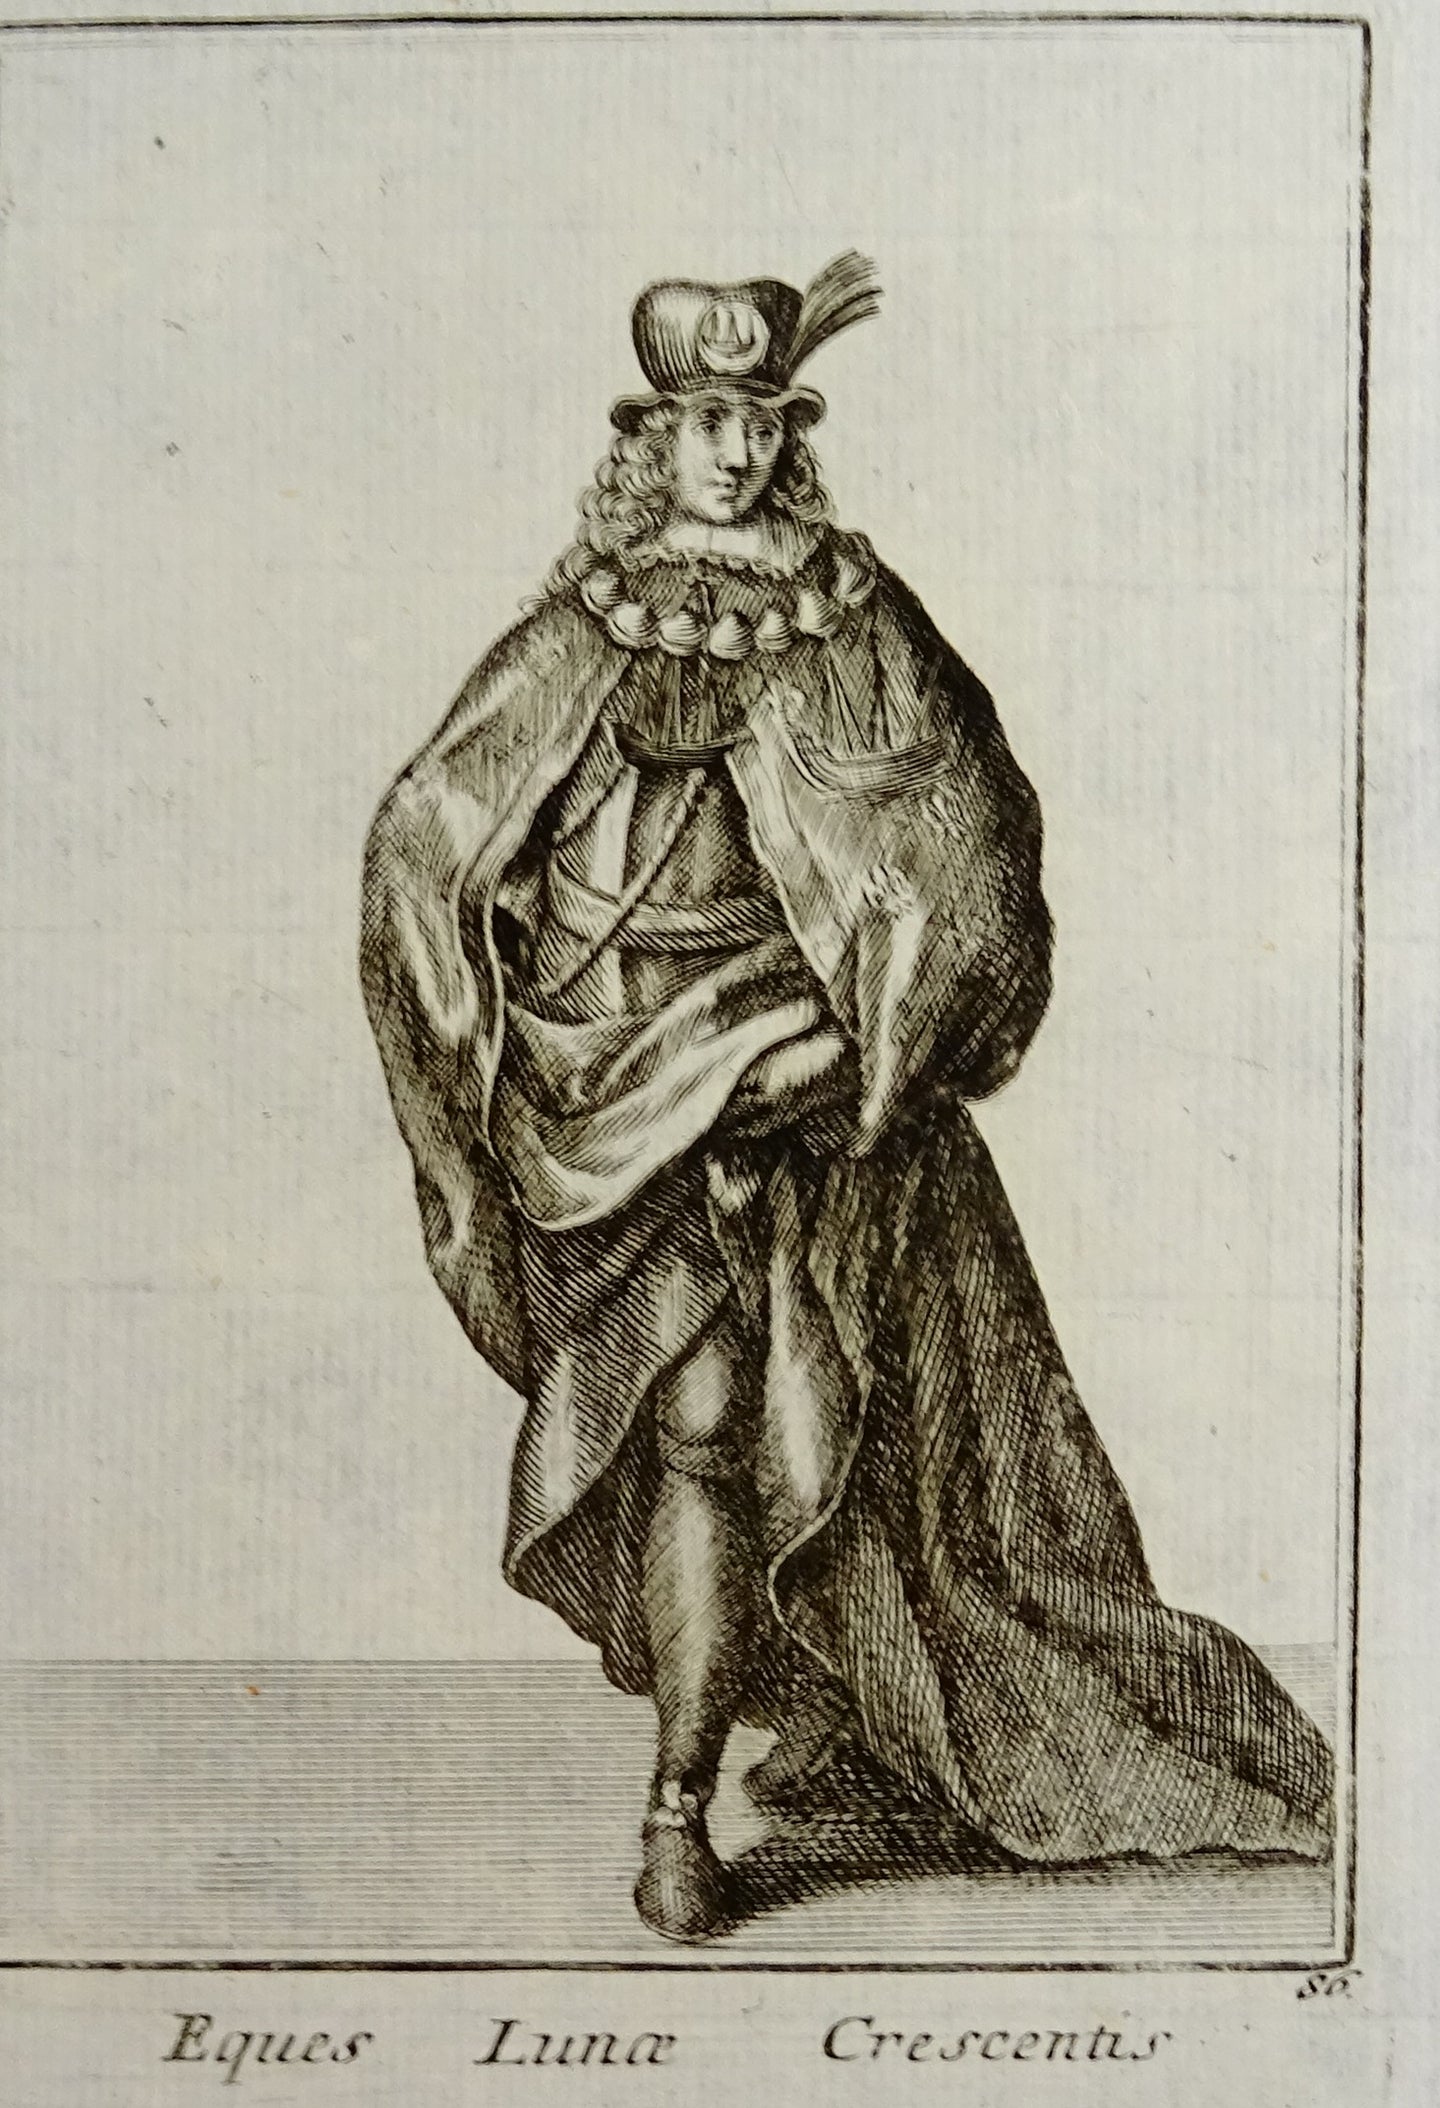 Eques Lunae Crescentis - Ordinum equestrium et militarium - ca 1711